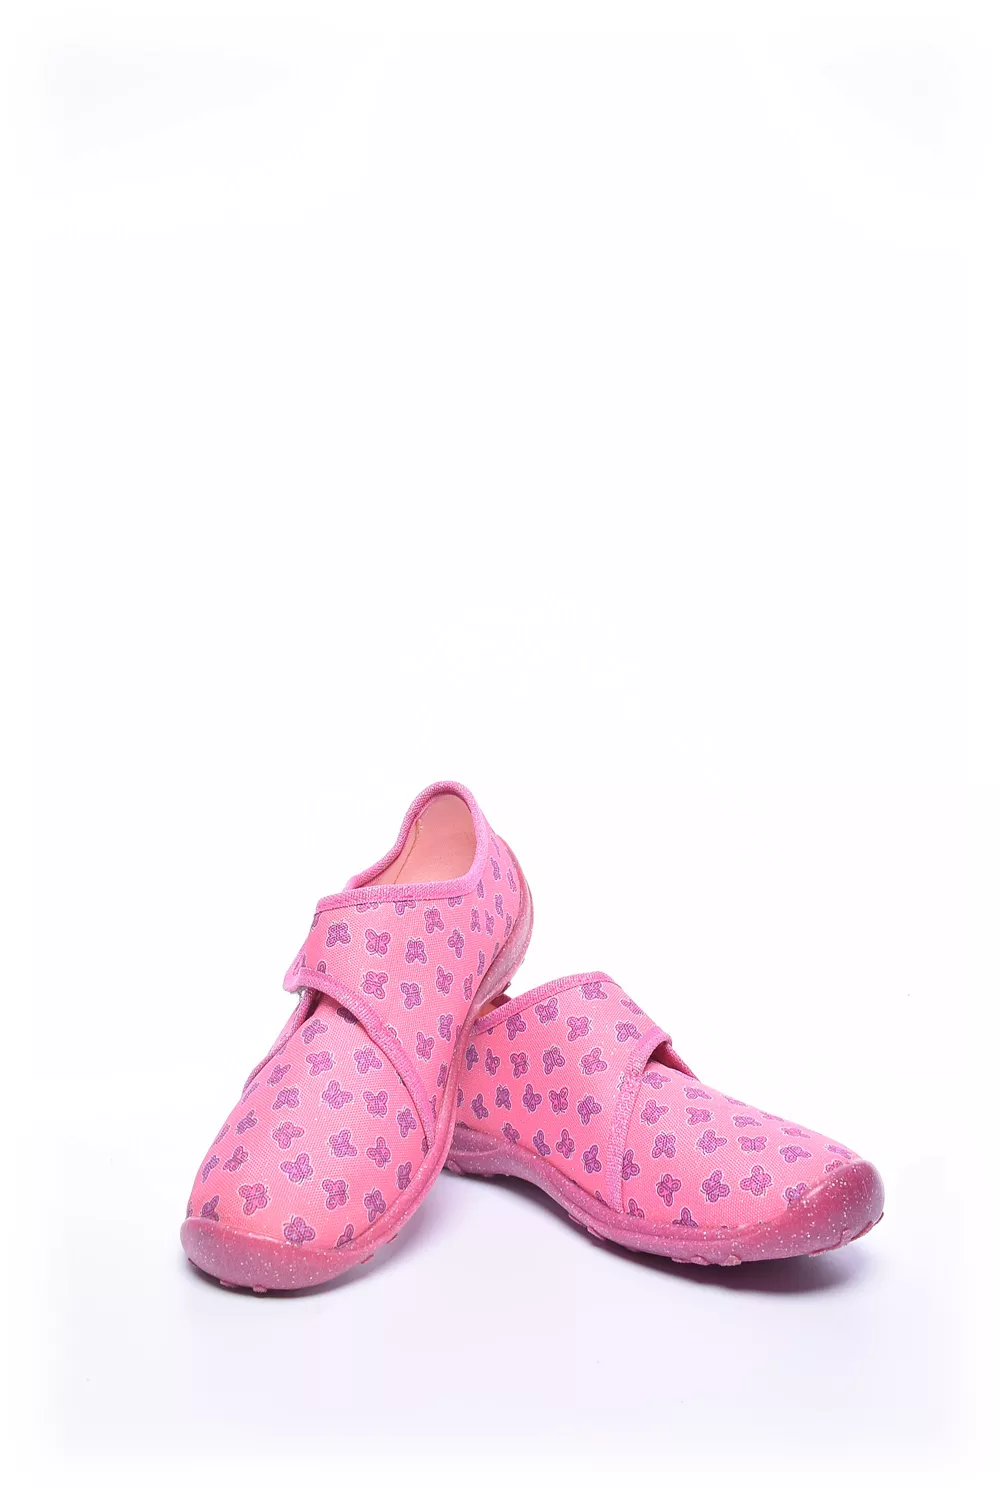 Pantofi fete [4]